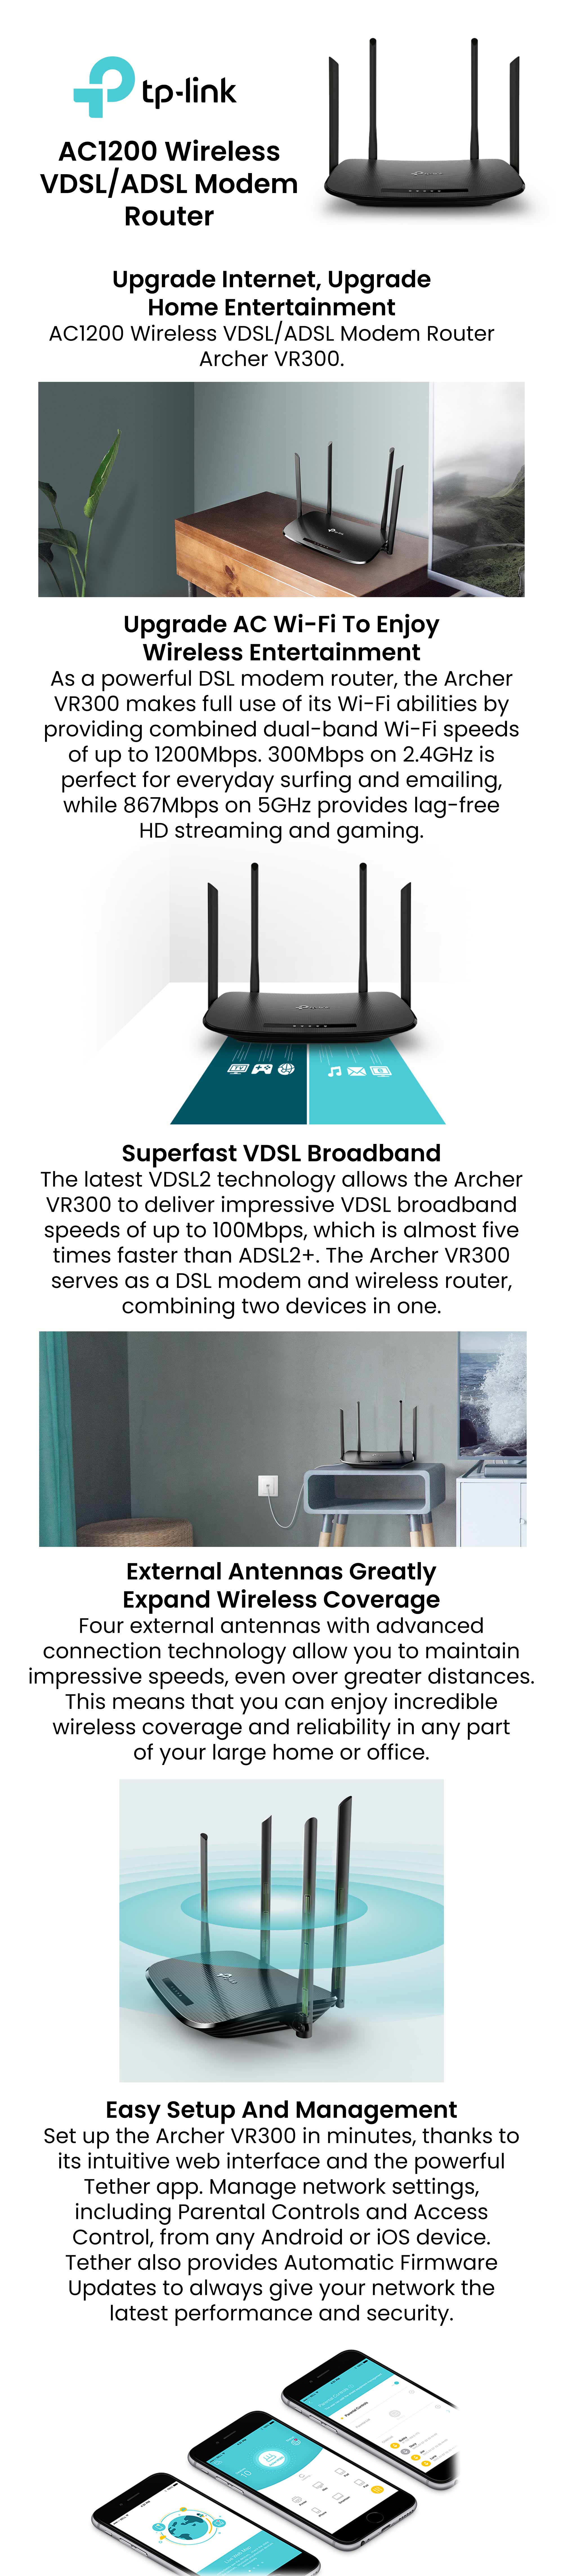 Modem Routeur WiFi AC1200 VDSL/ADSL TP-LINK Archer VR300